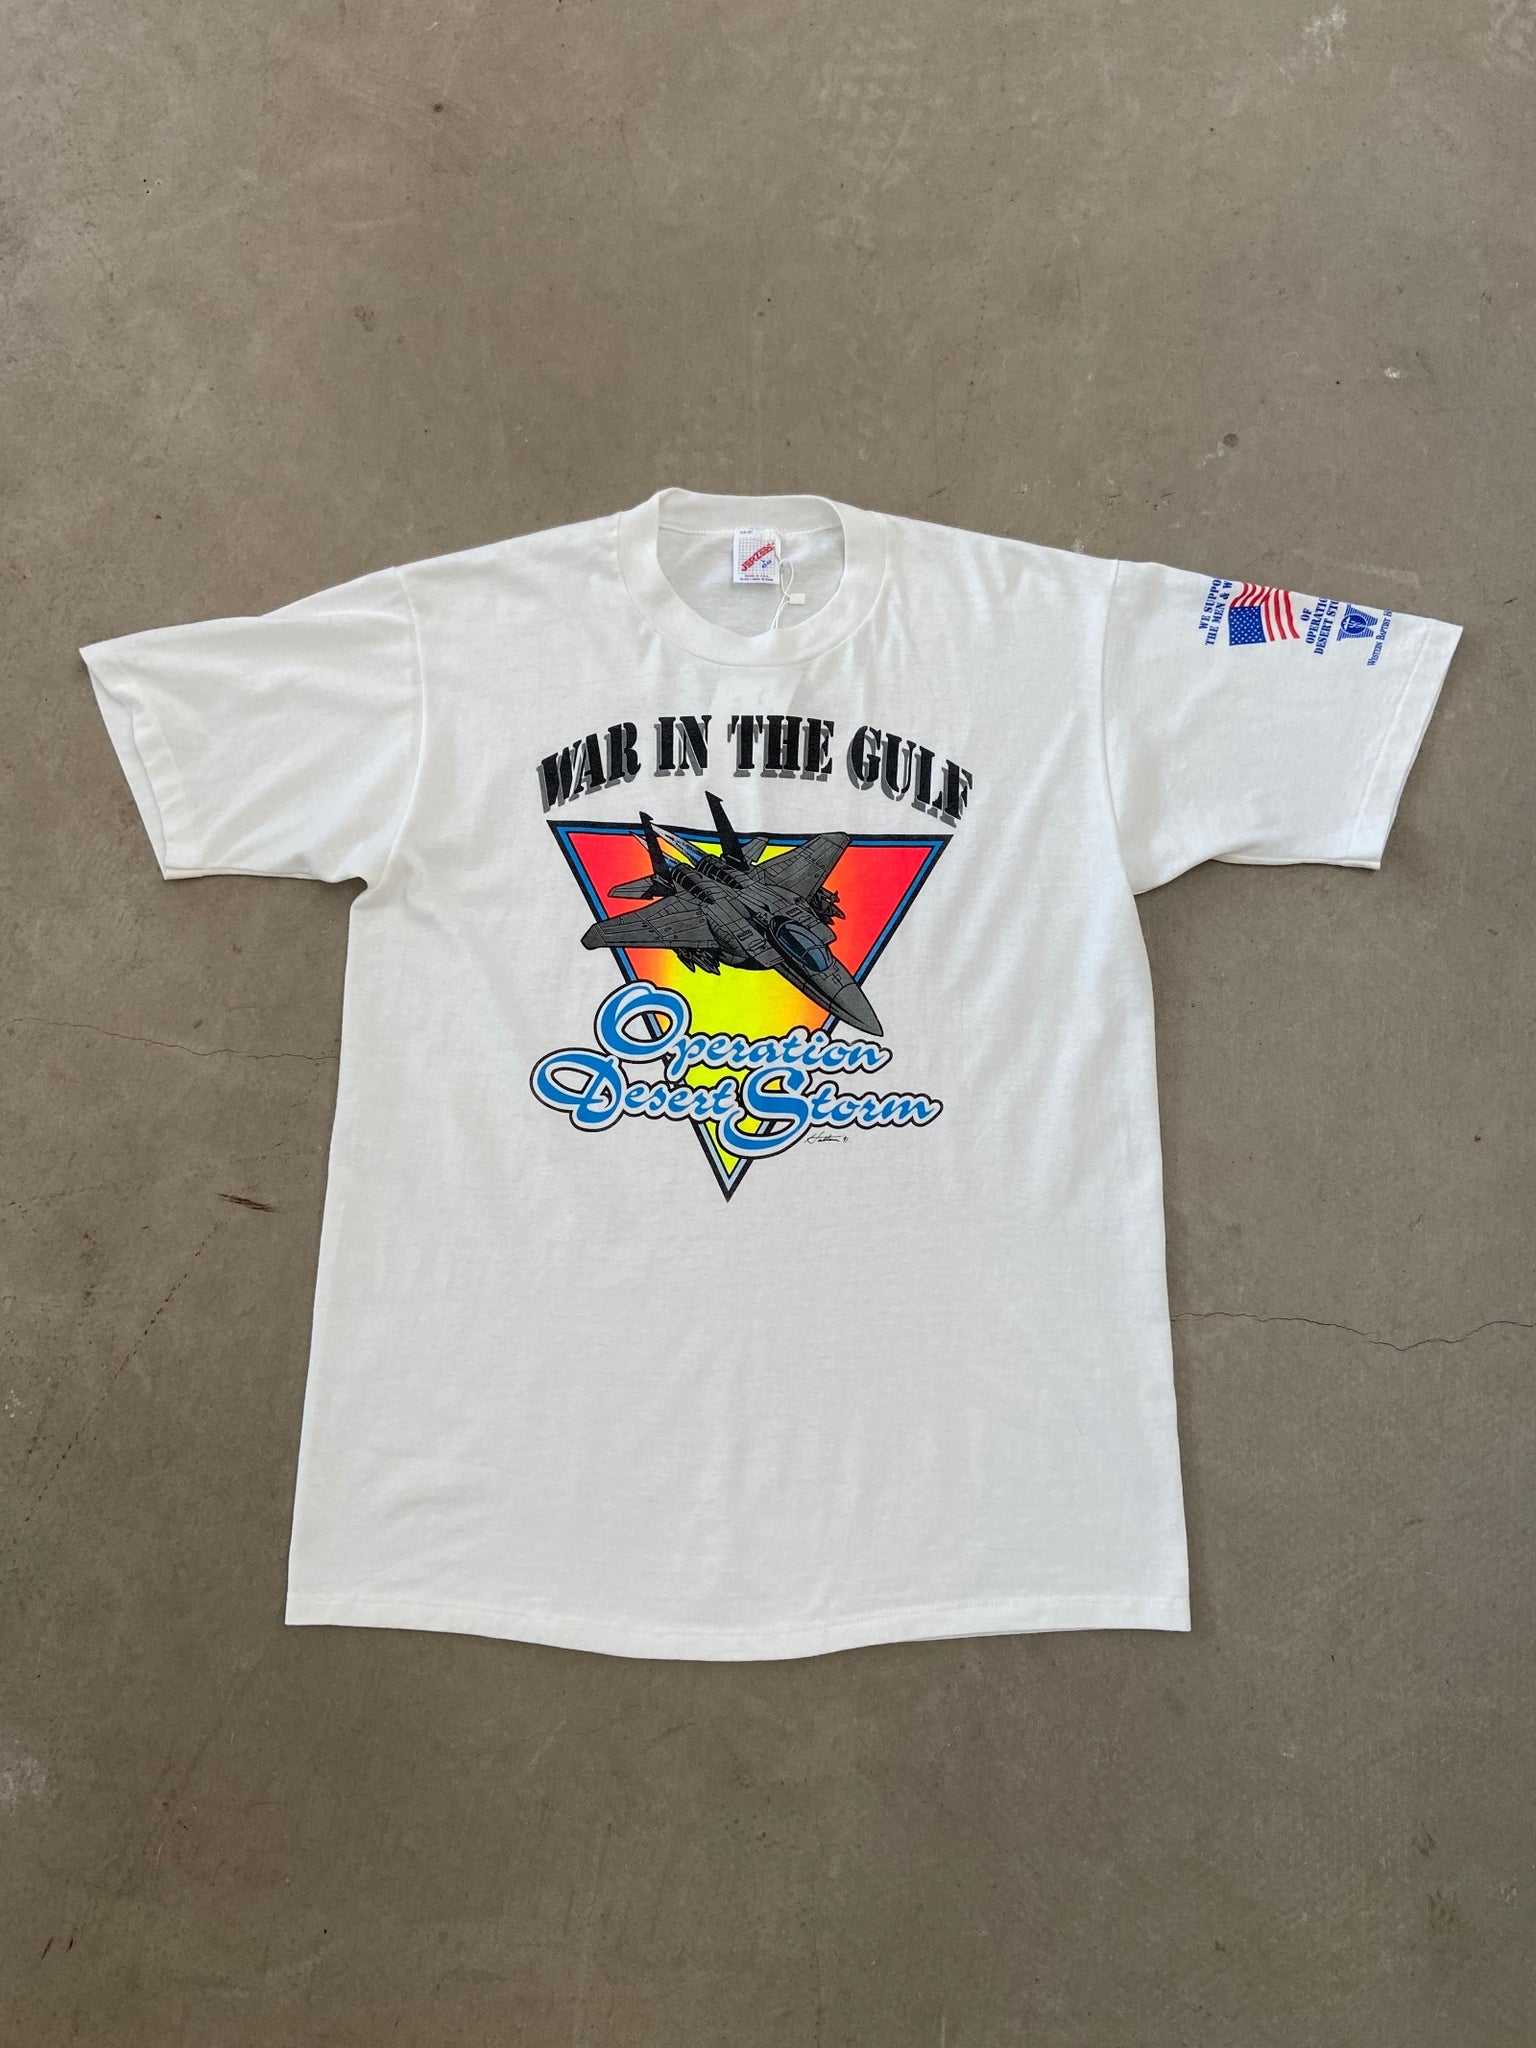 1991 War in the Gulf T-shirt - L